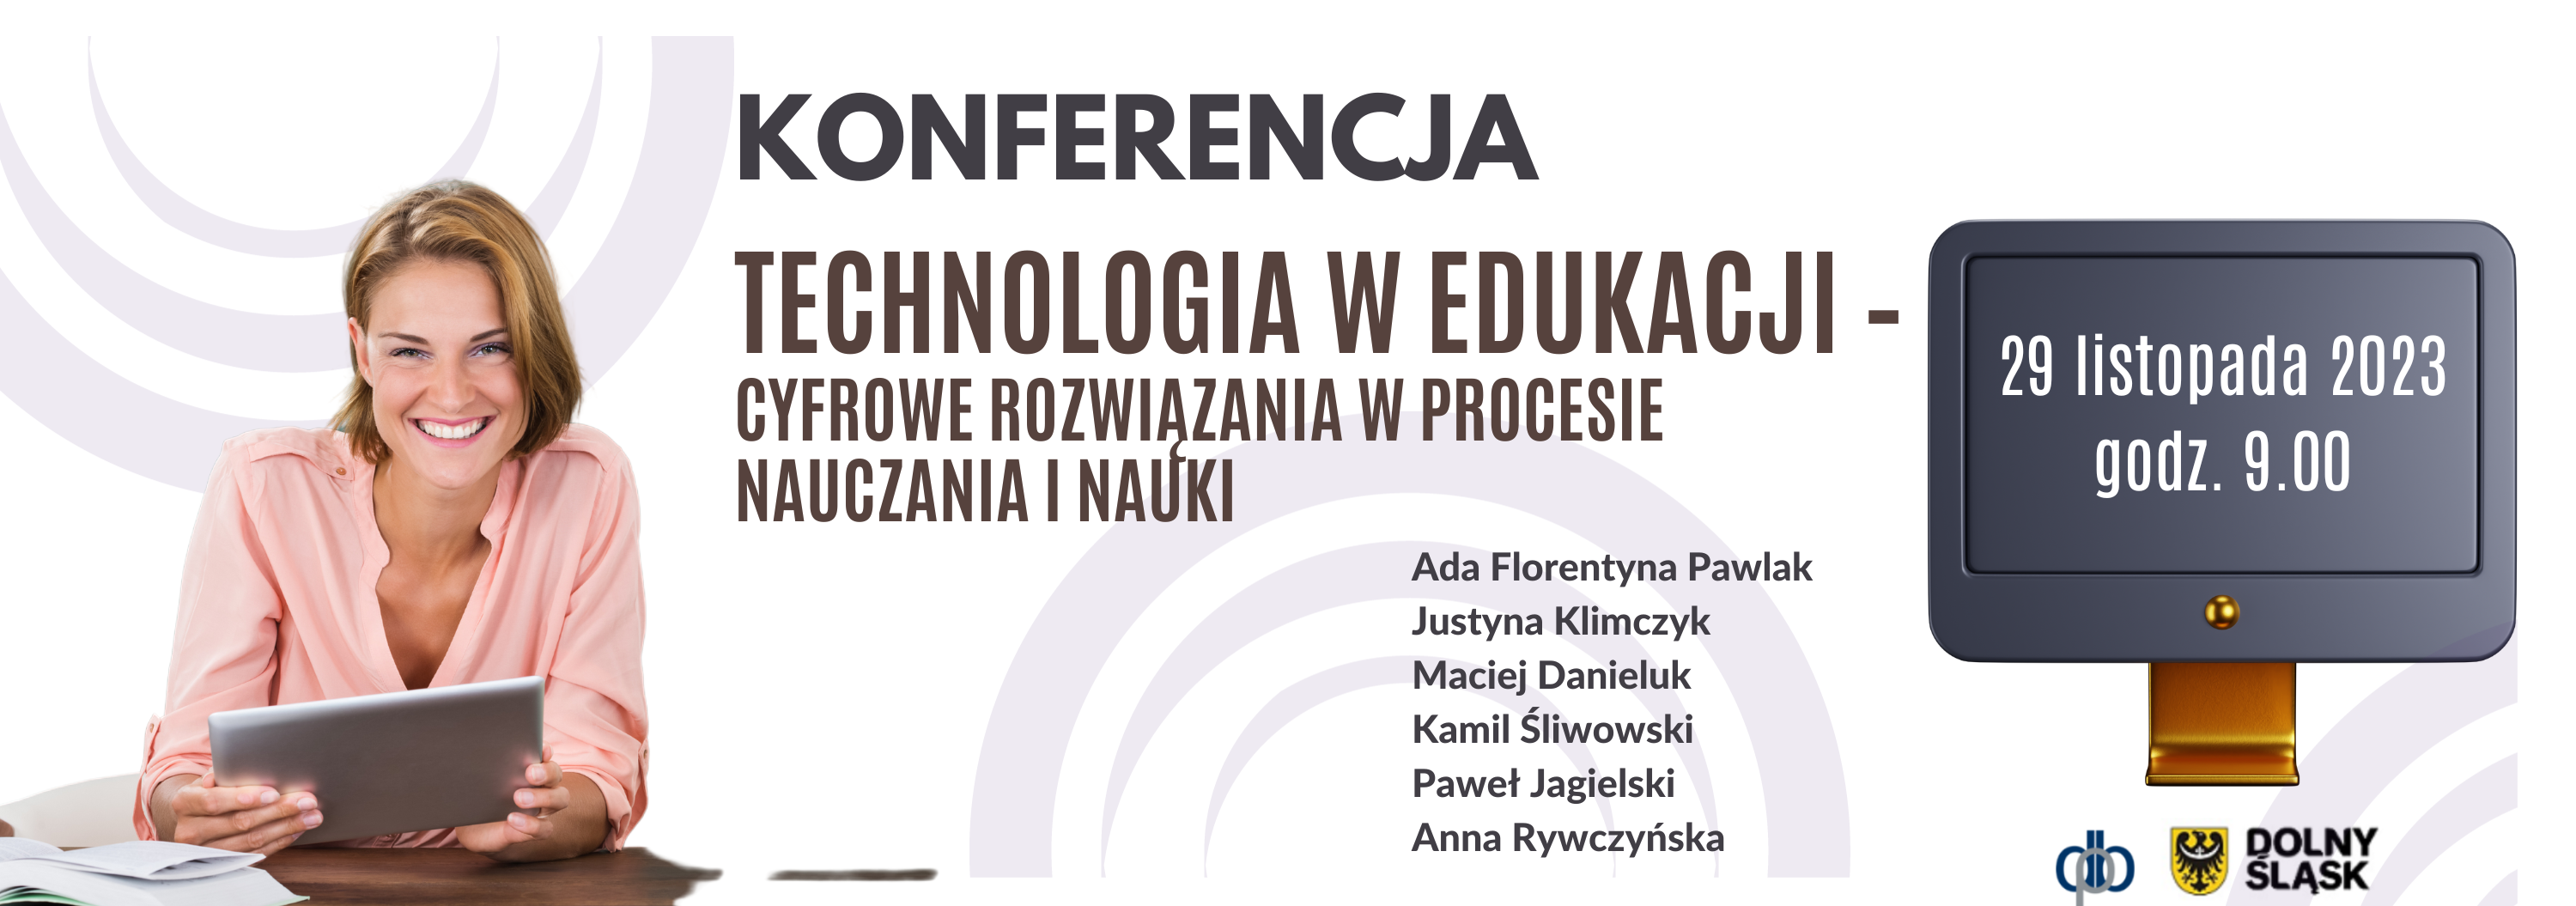 Konferencja Technologia w edukacji